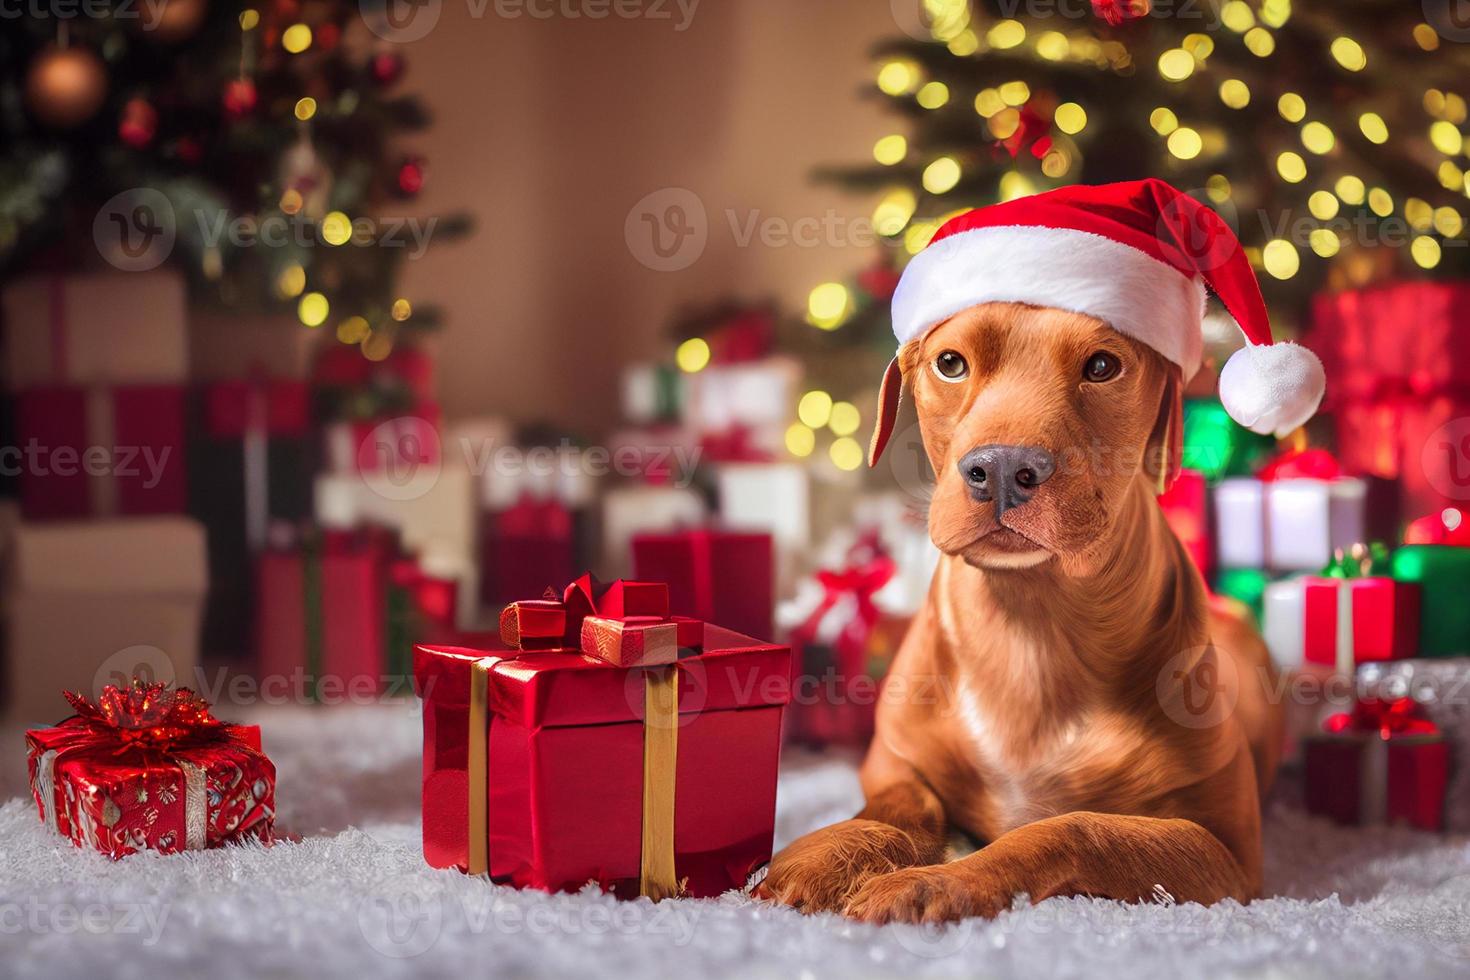 süßer ungarischer magyar vizsla hund mit weihnachtsmütze in einem weihnachtsraum mit geschenkboxen foto